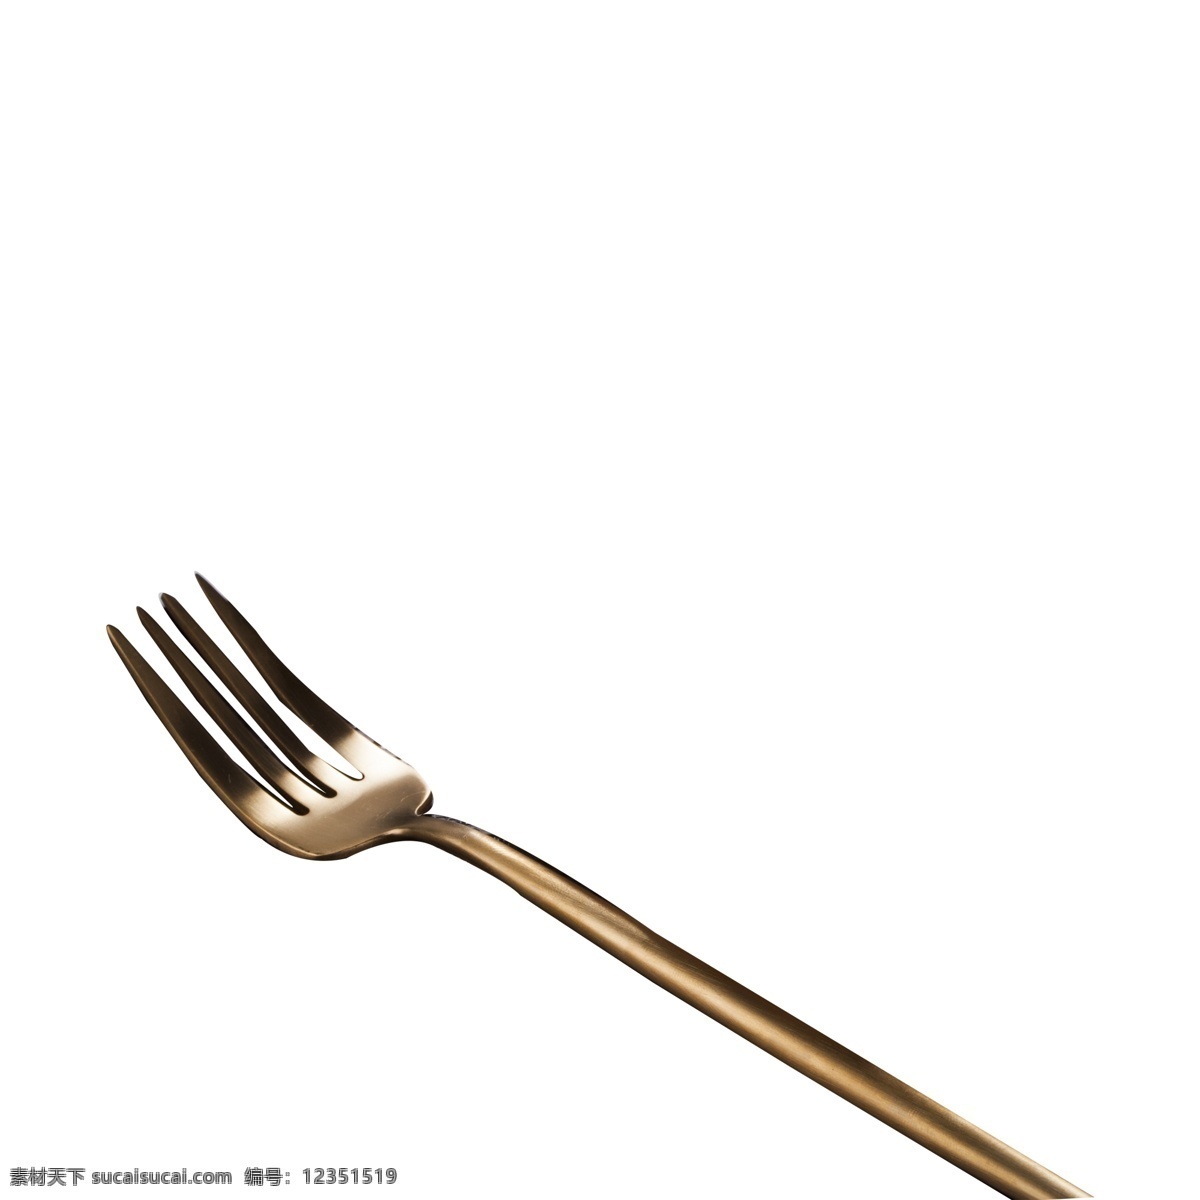 银灰色 刀叉 免 抠 图 西餐工具 叉子 厨房工具 西式西餐工具 时尚工具 银灰色的刀叉 工具 免抠图